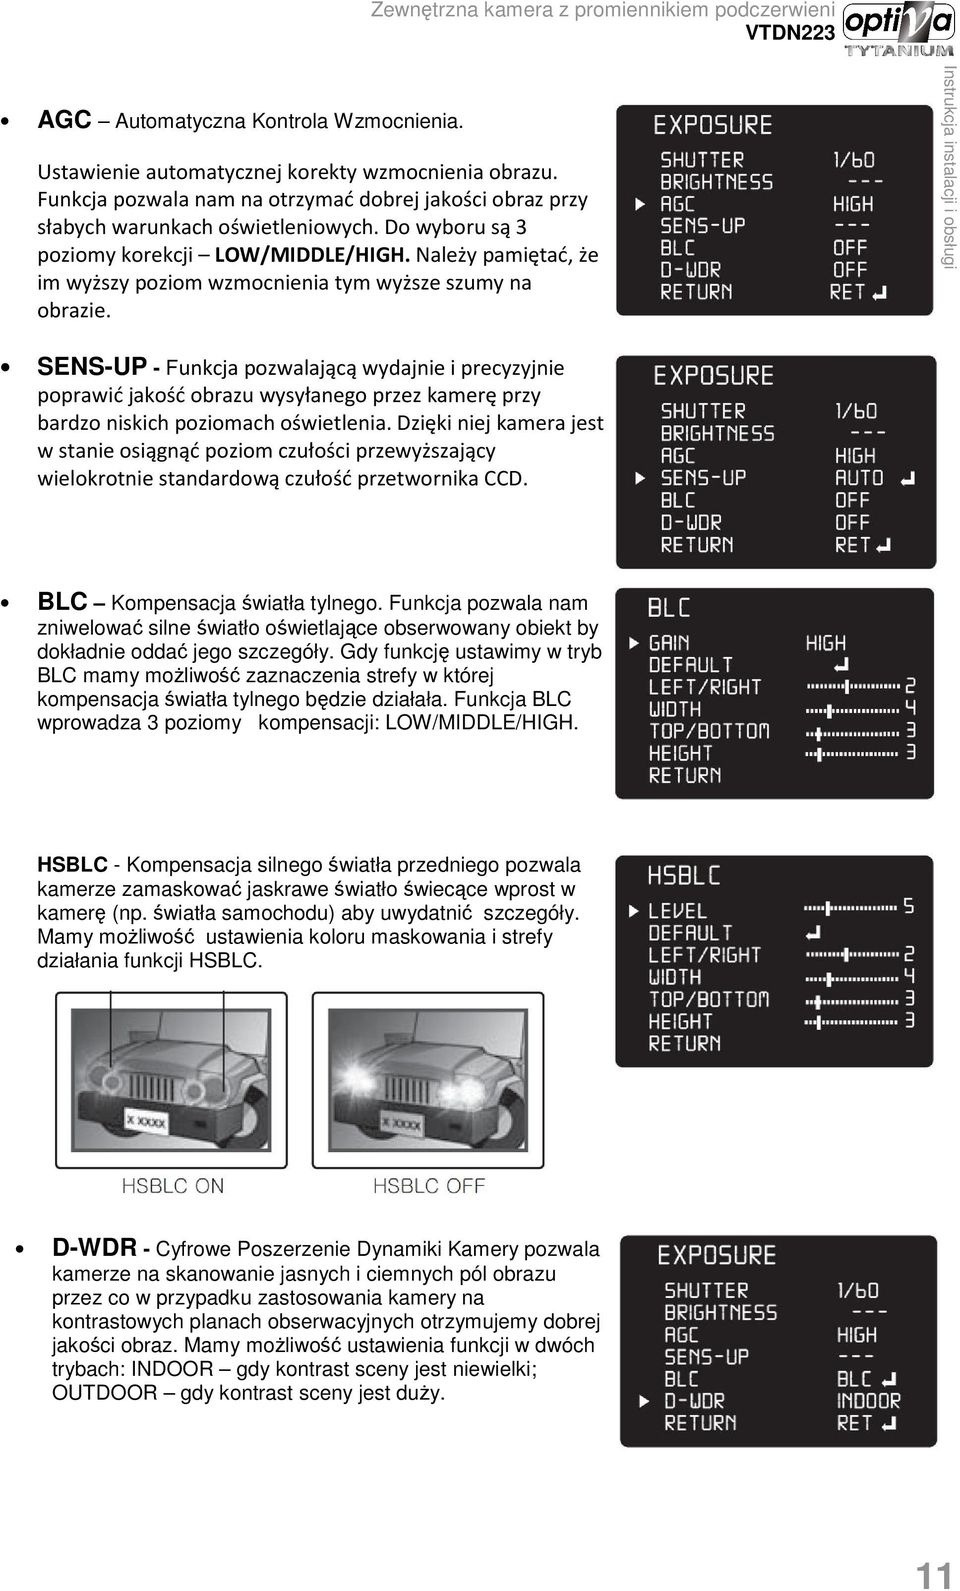 SENS-UP - Funkcja pozwalającą wydajnie i precyzyjnie poprawić jakość obrazu wysyłanego przez kamerę przy bardzo niskich poziomach oświetlenia.